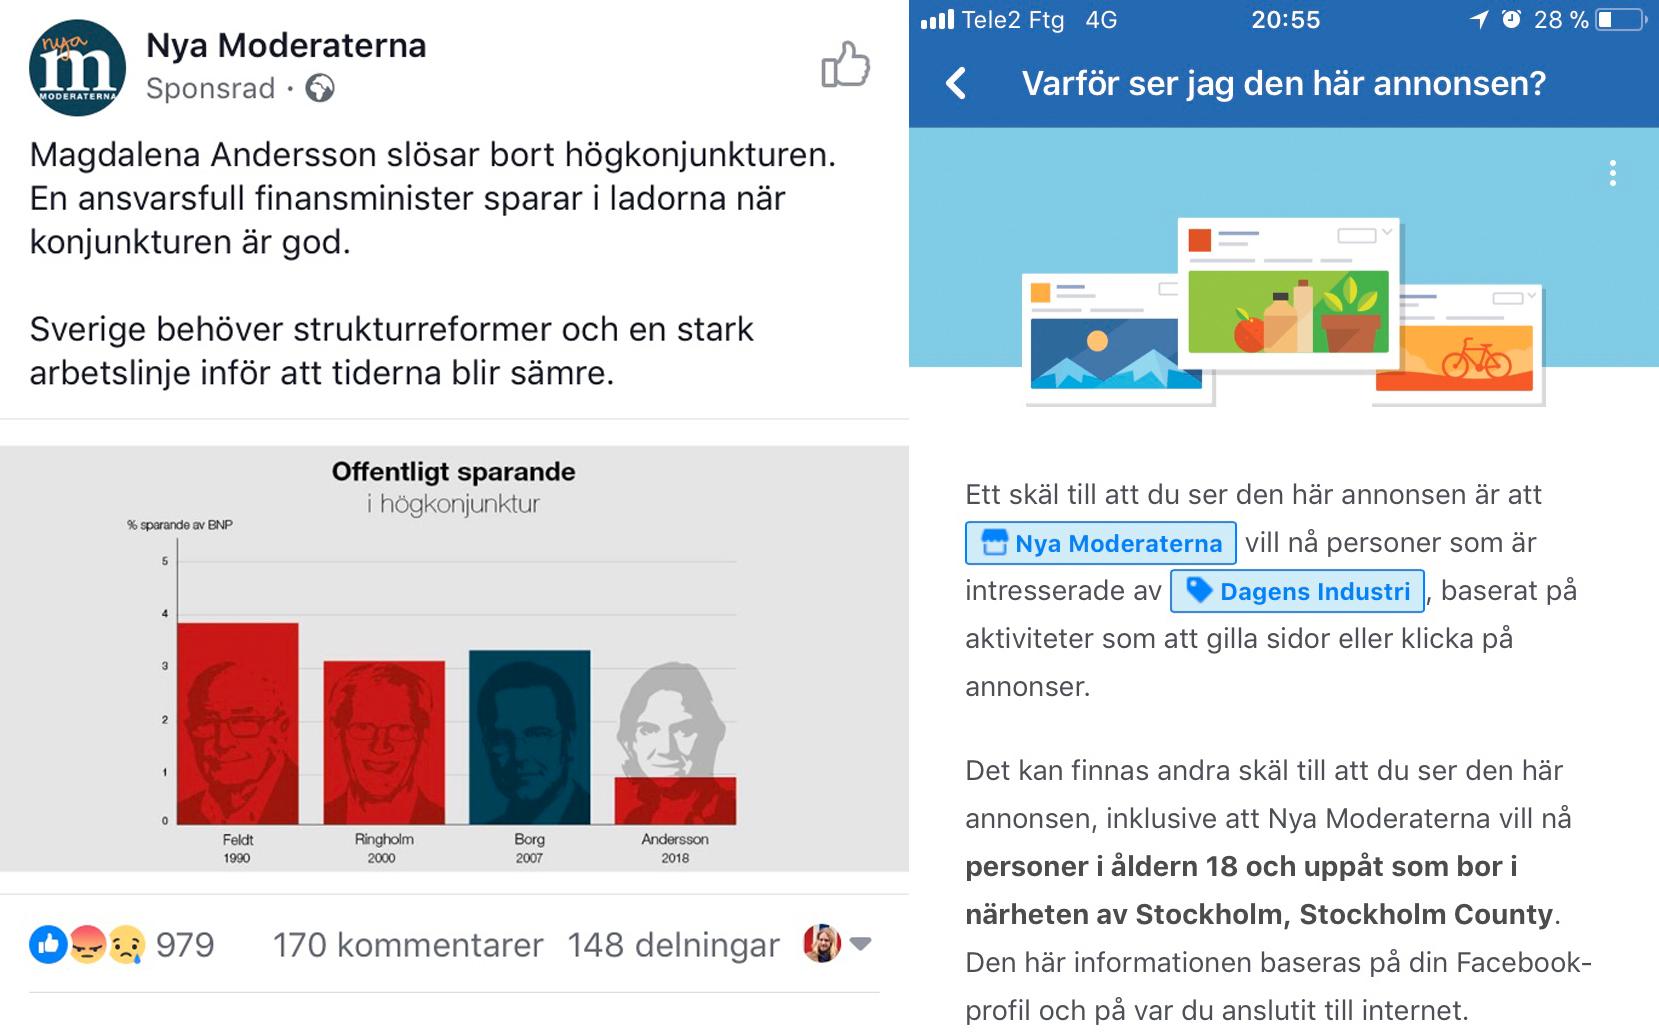 En så kallad ”dark ad” från Moderaterna, riktad mot Facebook-användare som ”gillar” Dagens Industri.